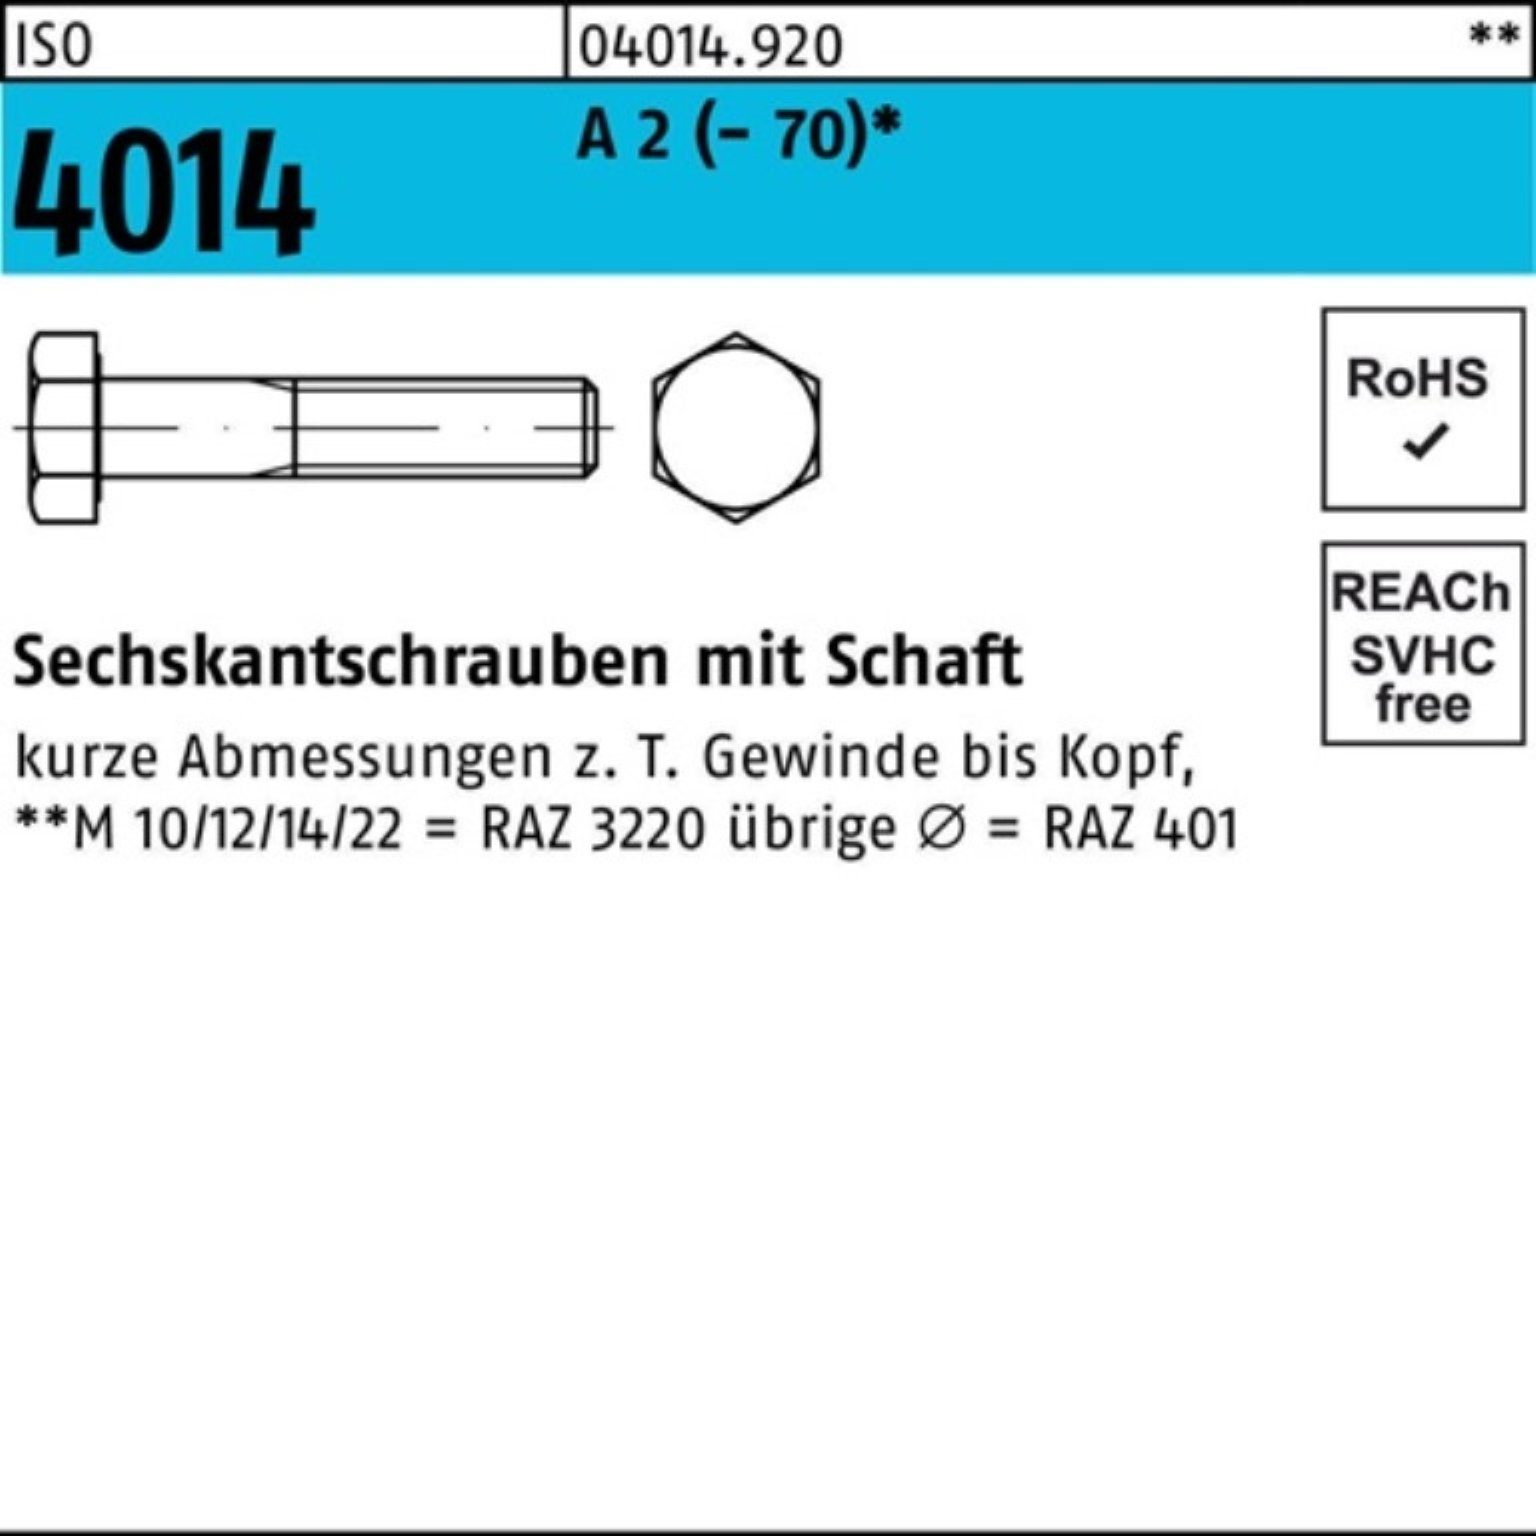 Bufab Sechskantschraube 100er Pack Sechskantschraube ISO 4014 Schaft M12x 75 A 2 (70) 50 St